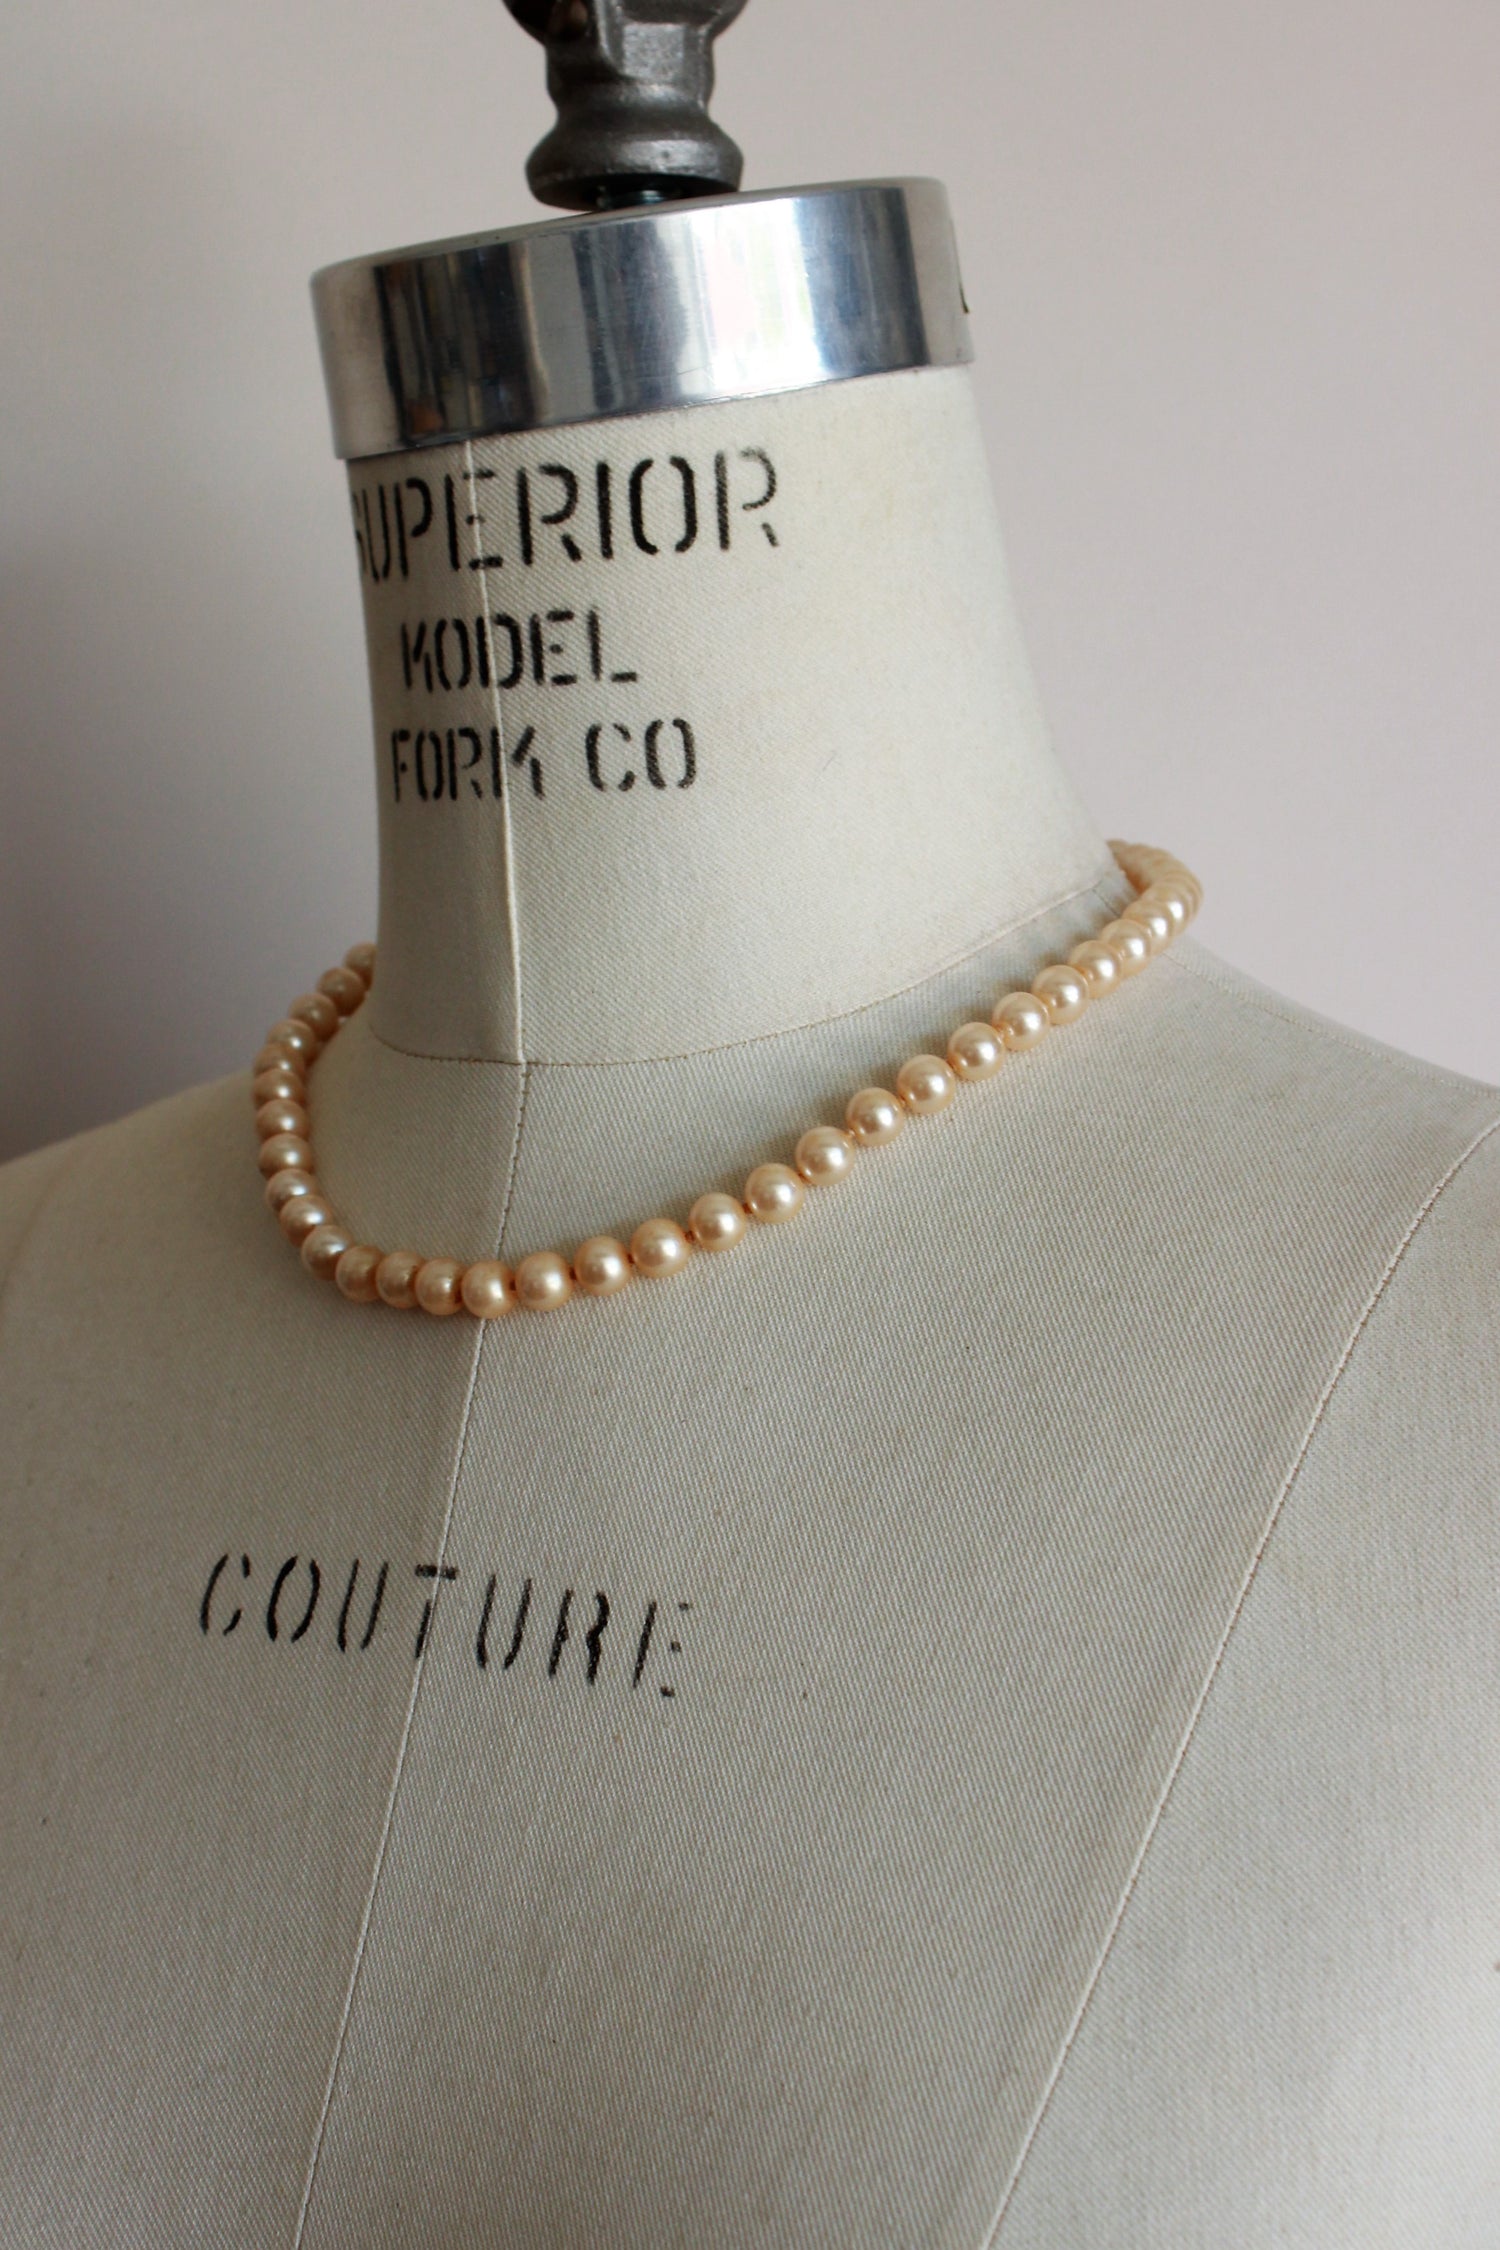 Vintage 1950s Faux Pearl Necklace